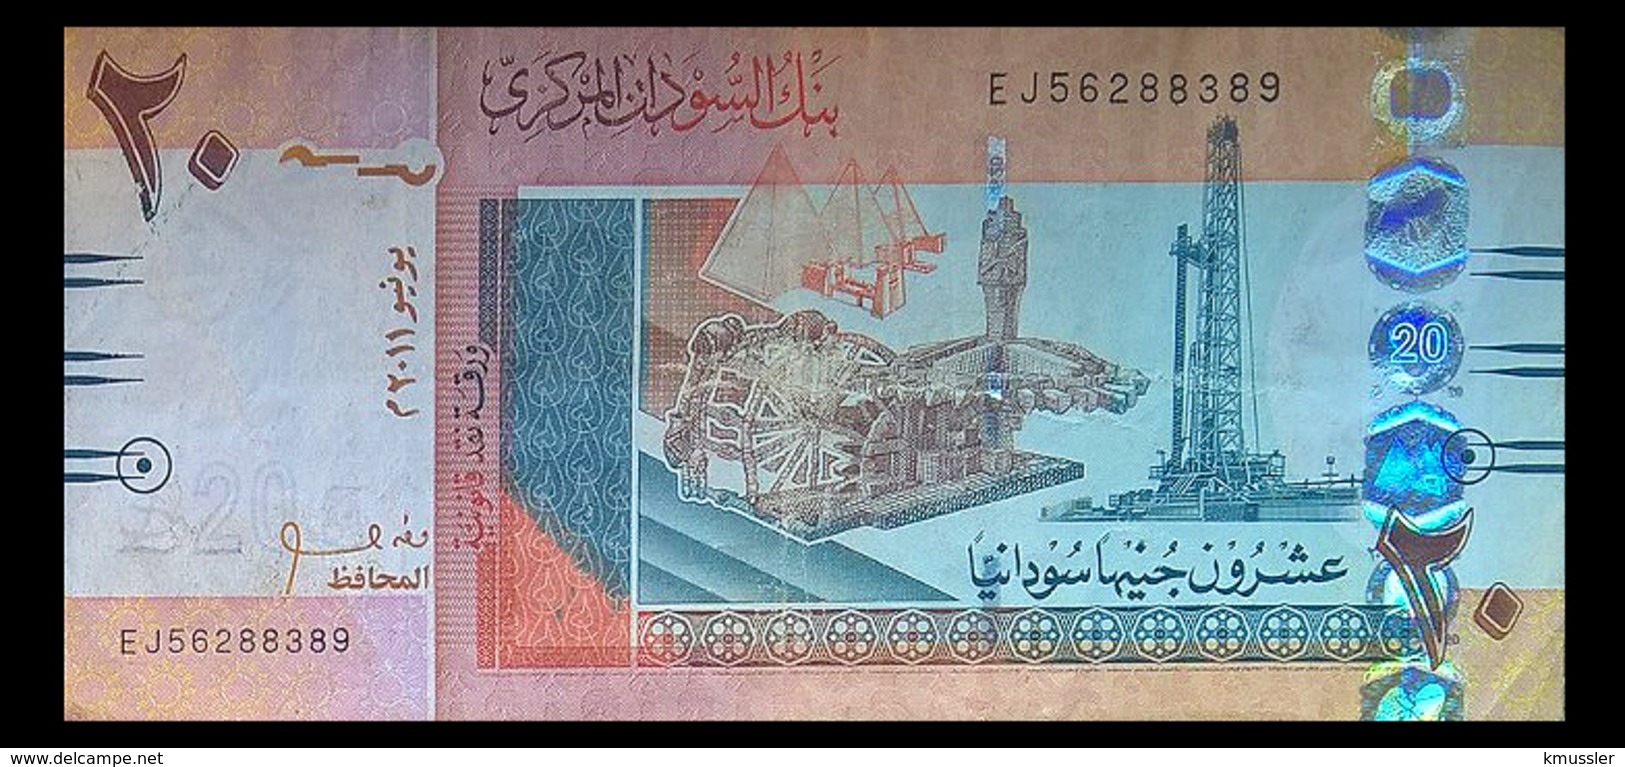 # # # Banknote Aus Afrika 20 Pounds 2011 # # # - Soudan